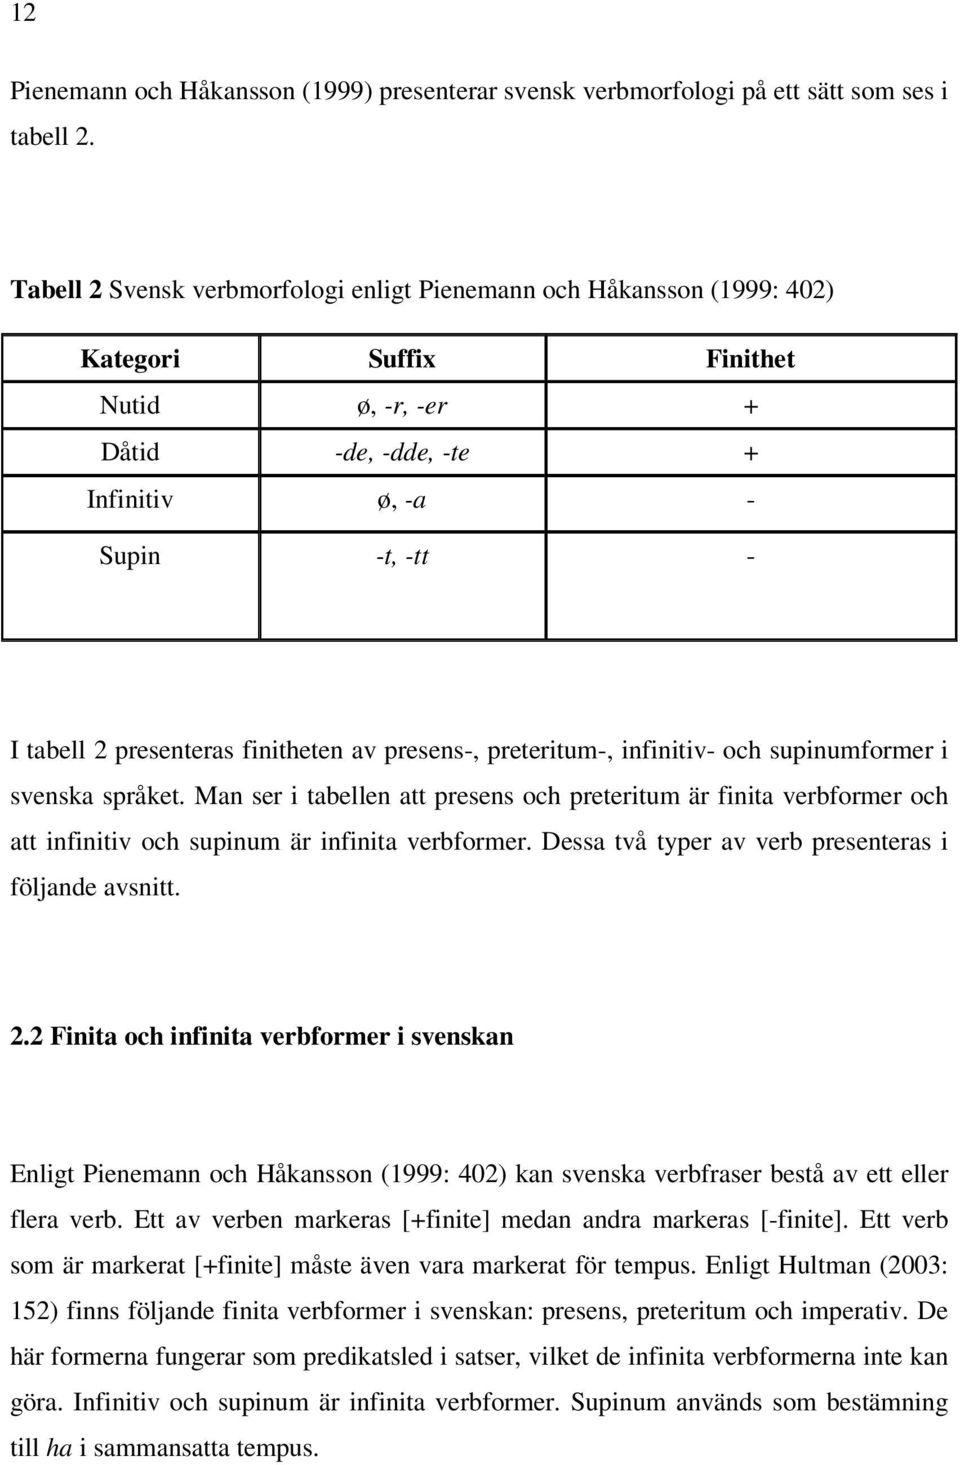 finitheten av presens-, preteritum-, infinitiv- och supinumformer i svenska språket.